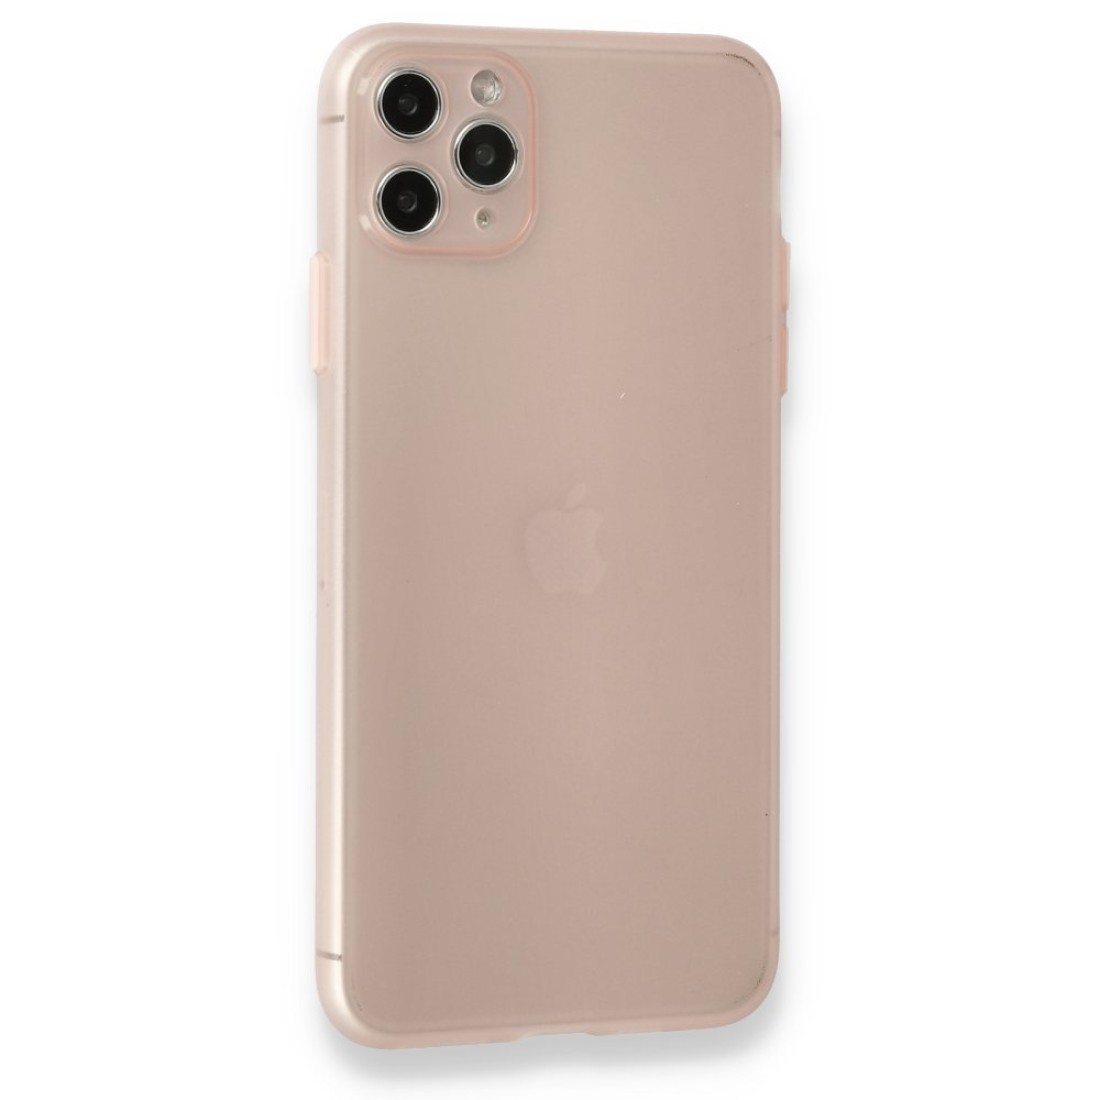 Apple iPhone 11 Pro Kılıf Puma Silikon - Pembe